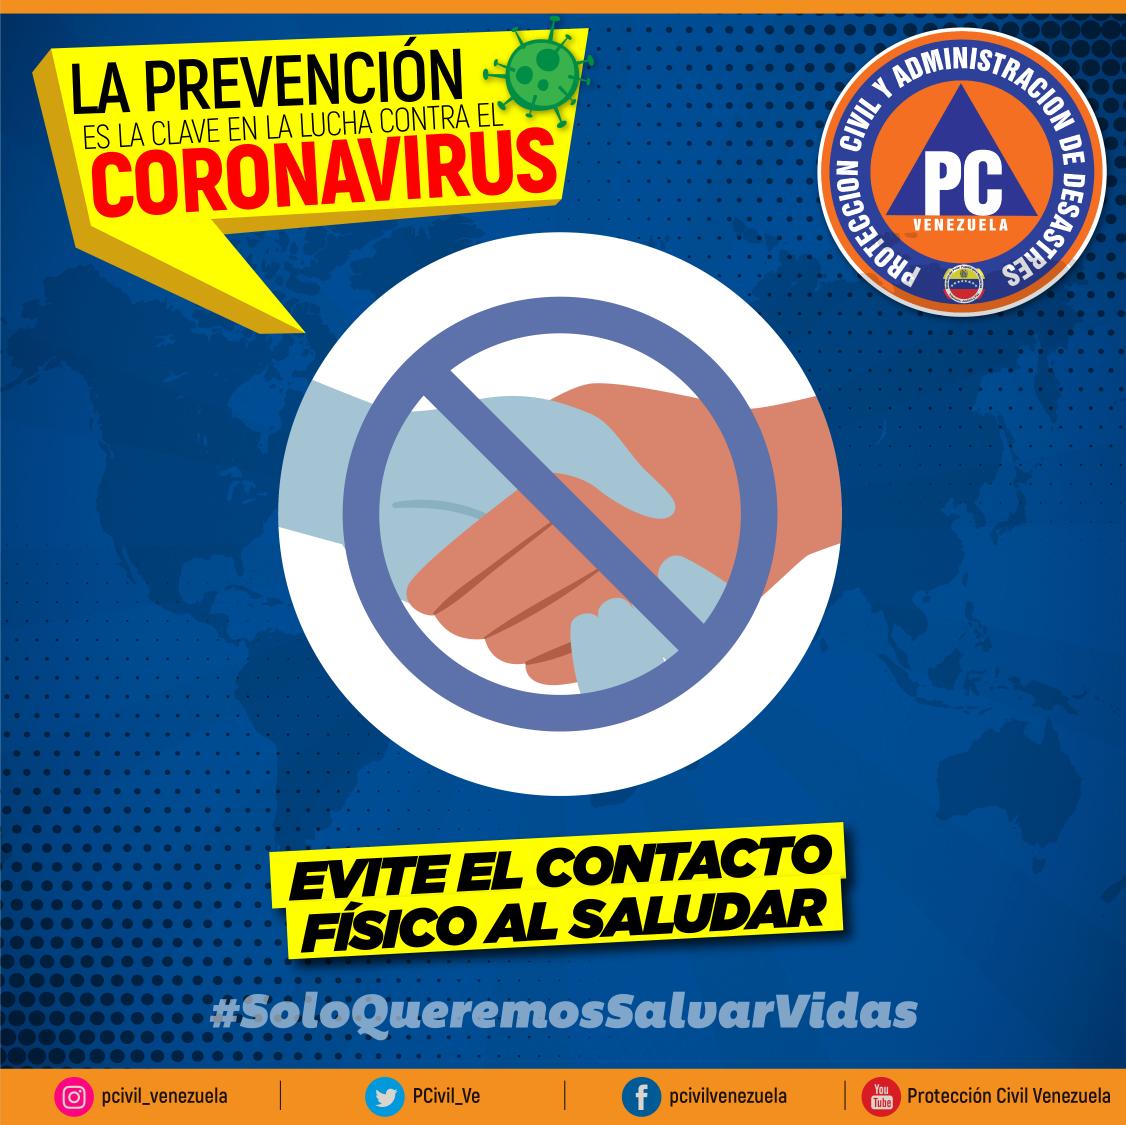 #Entérate | Hay medidas utilizadas para evitar la propagación del coronavirus, por ejemplo: Evite el contacto físico innecesario al saludar. ¡La clave es la prevención! #SemanaRadicalPorLaSalud #20Jul #SoloQueremosSalvarVidas